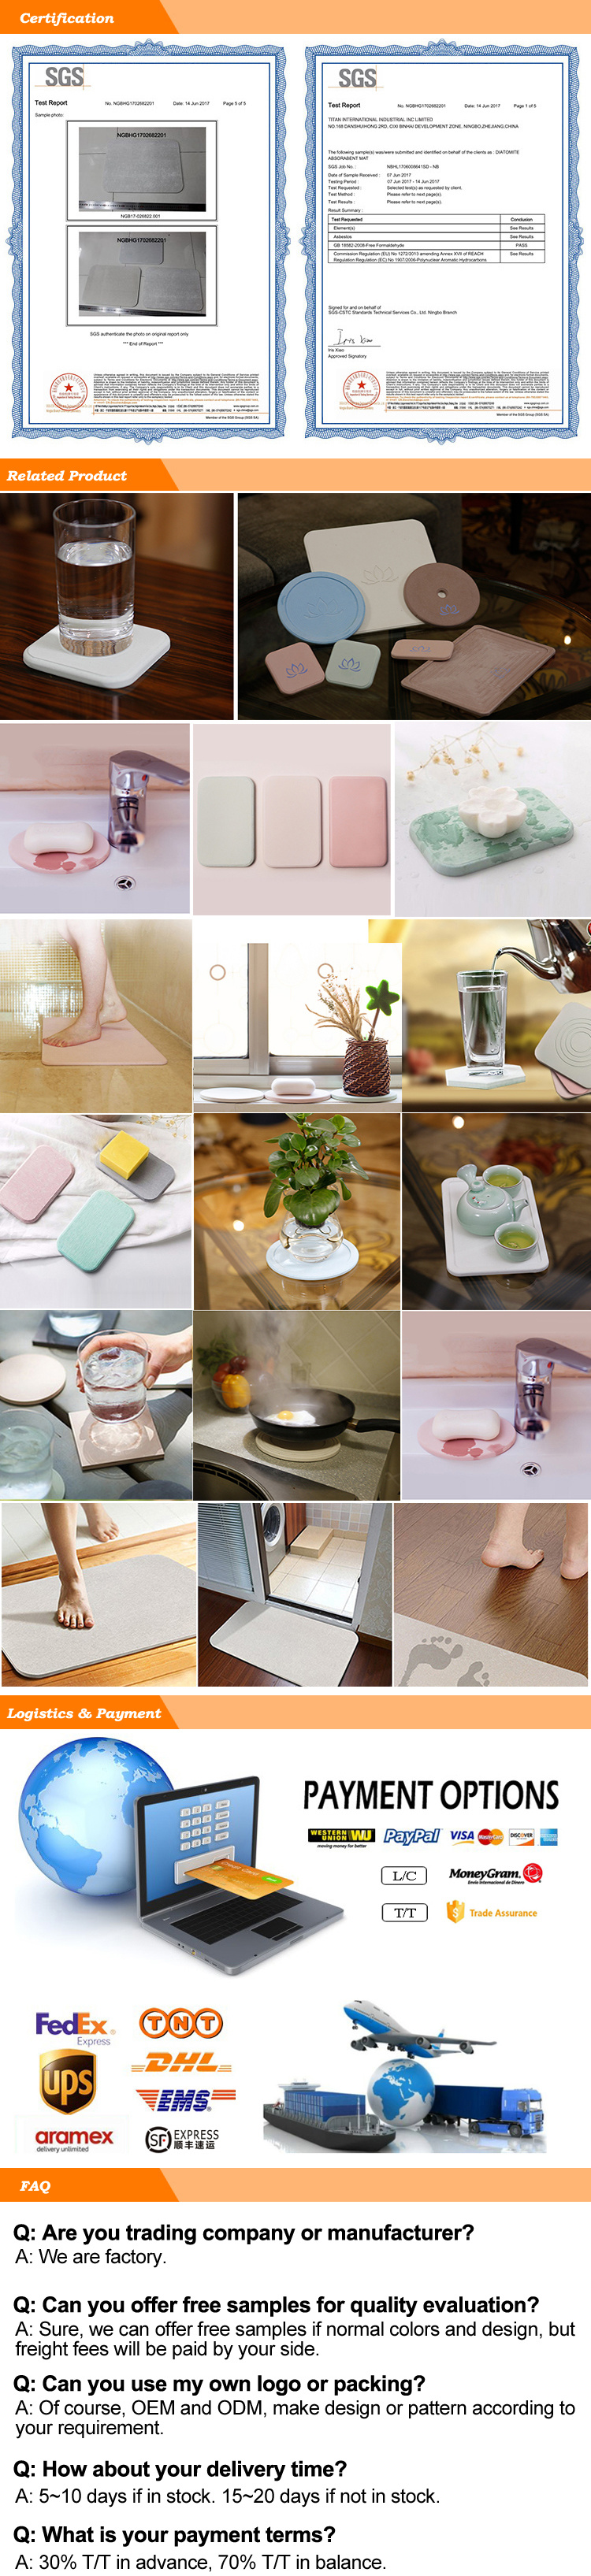 Japan Diatomite Bathroom Mat